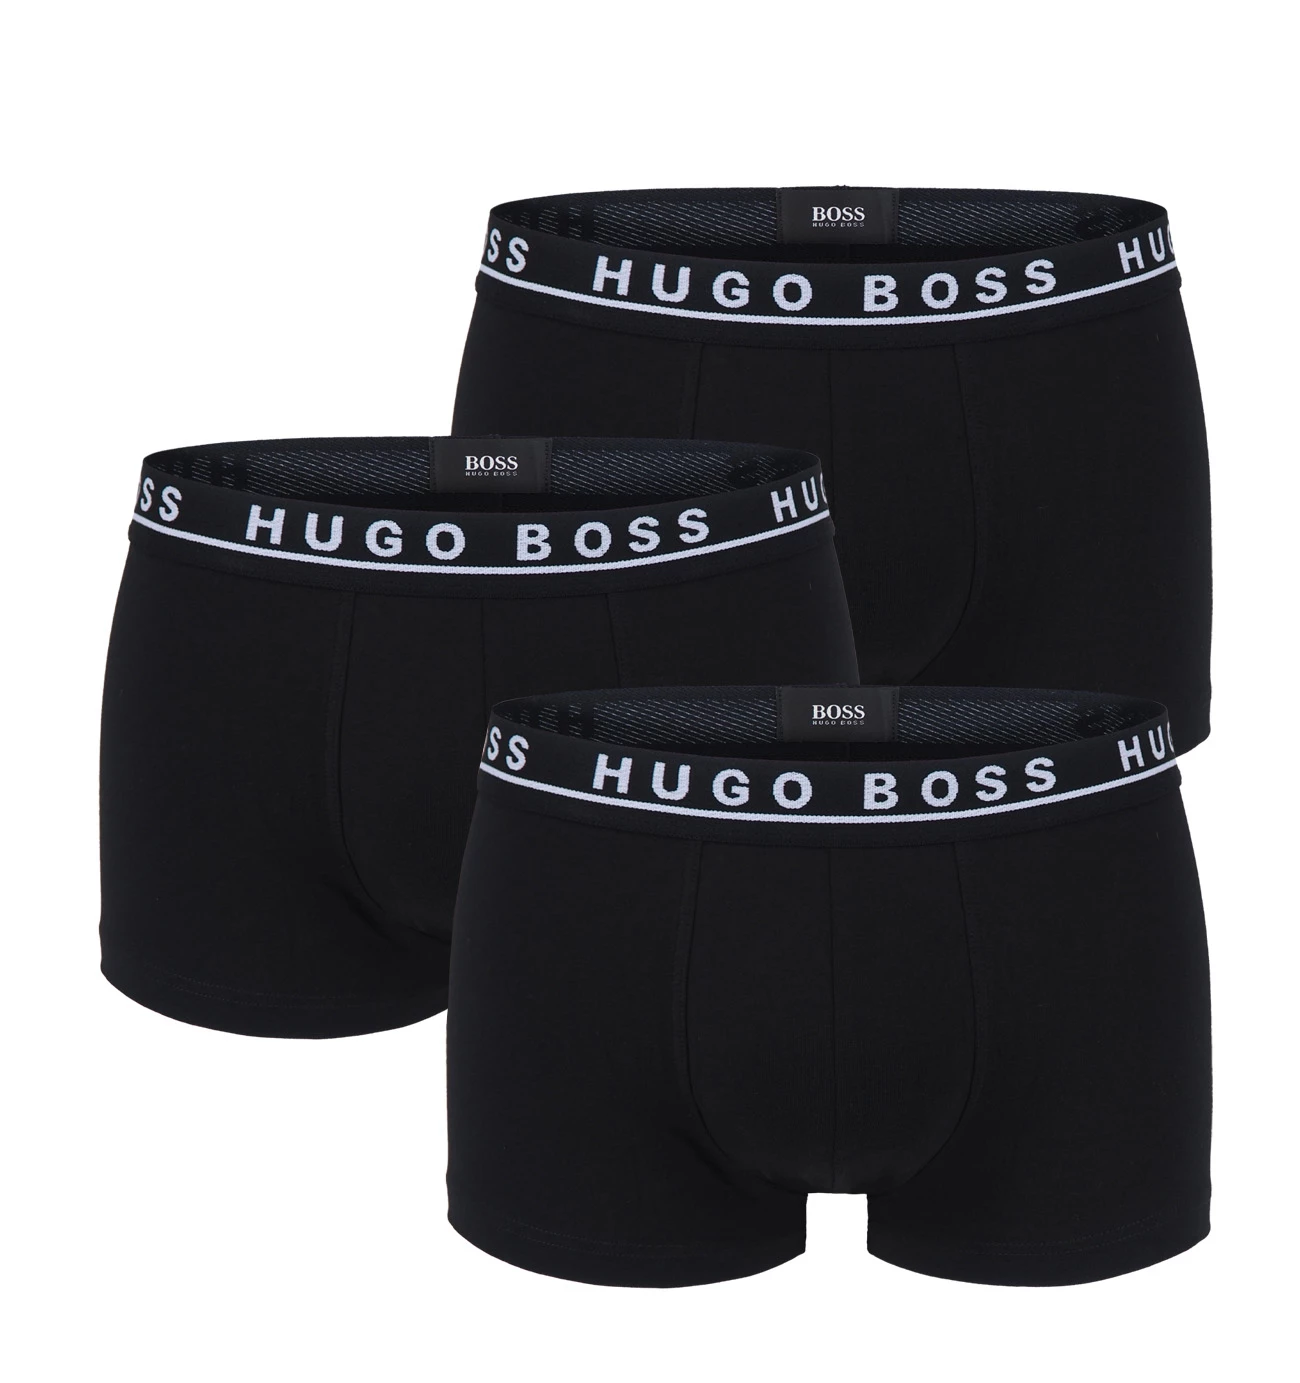 BOSS - 3PACK boxerky black (HUGO BOSS)